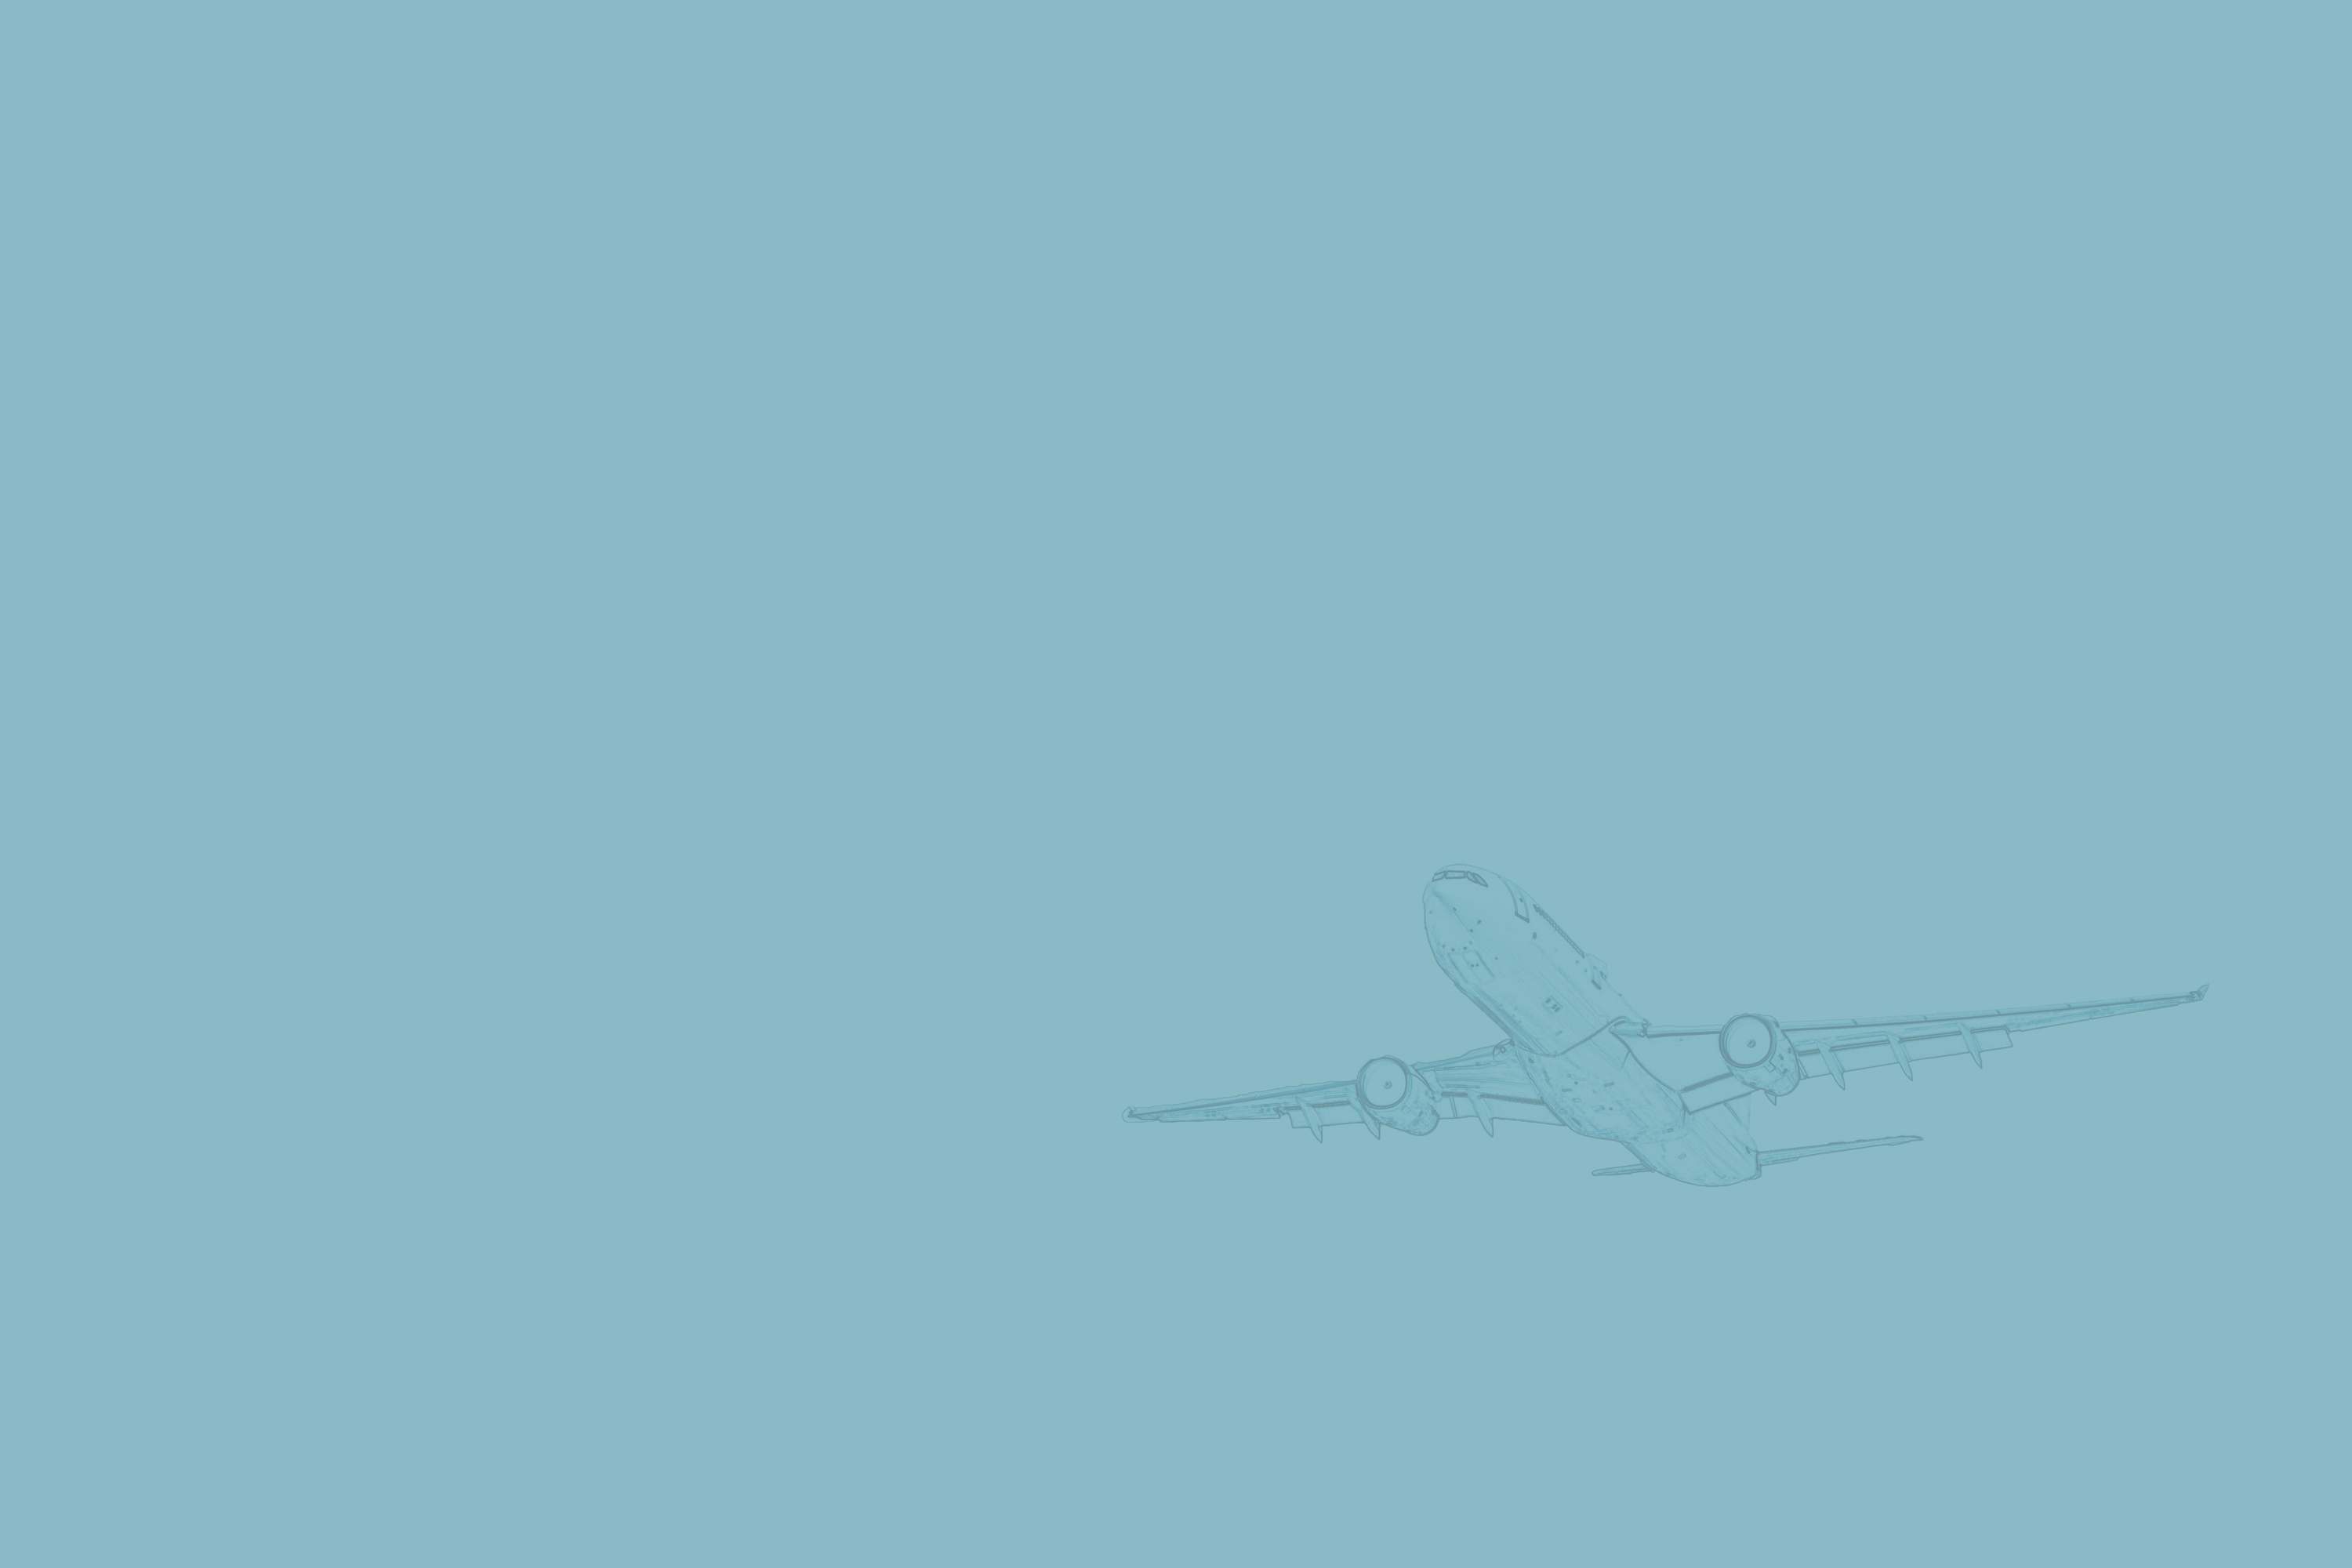 Airplane Drawing Down Watermark